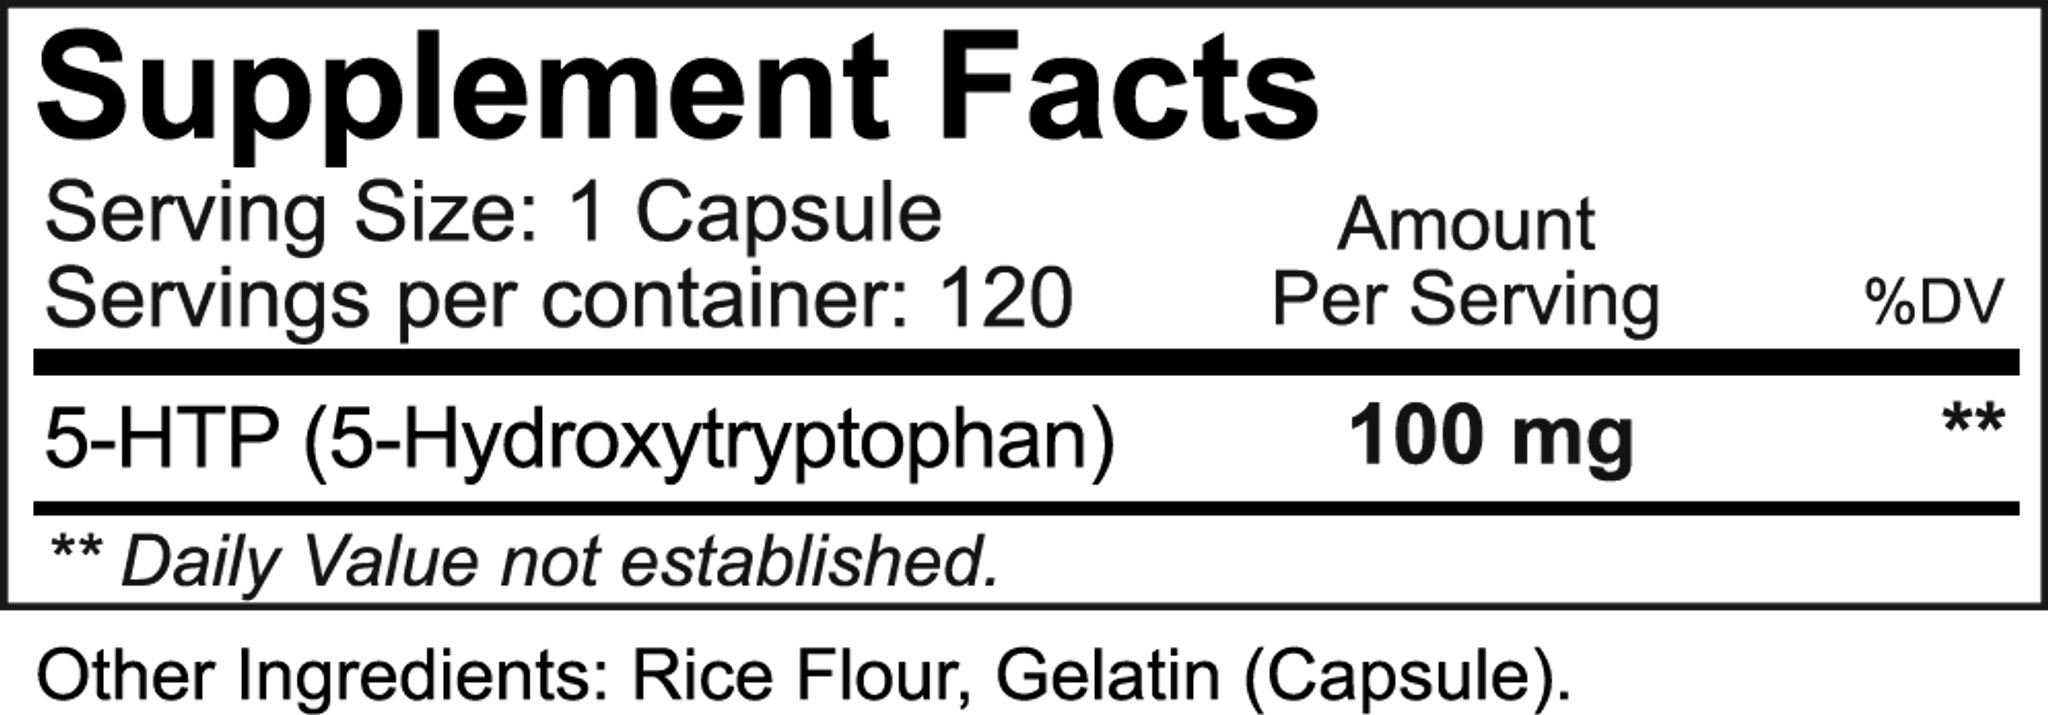 5-HTP kapsule dejstvo